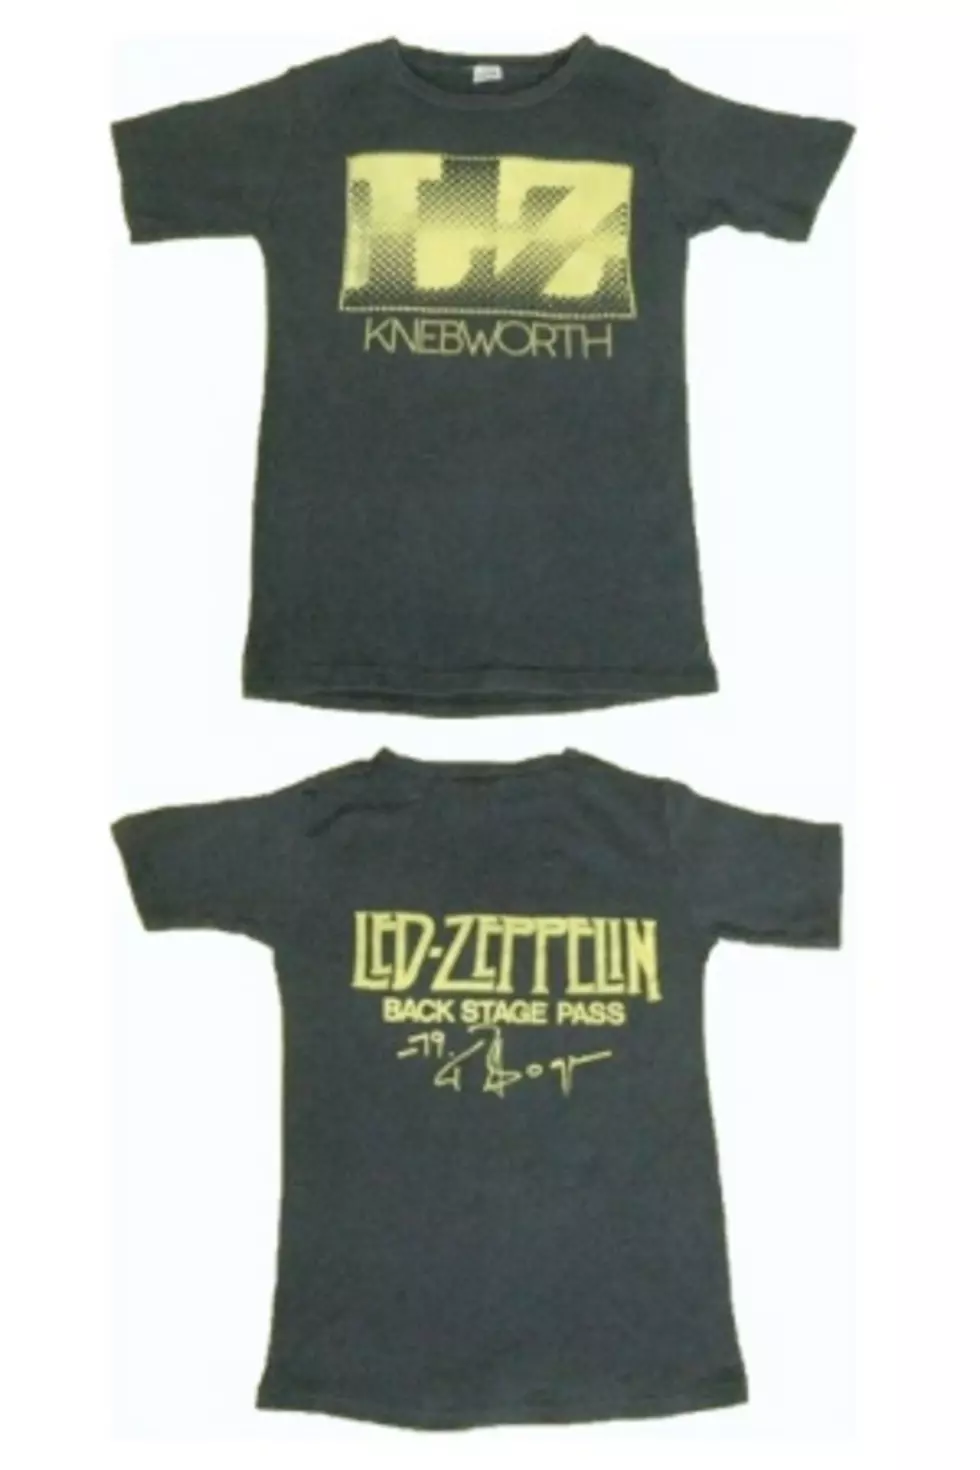 Led Zeppelin T-Shirt Nets Whole Lotta Loot &#8212; $10,000 &#8212; On eBay